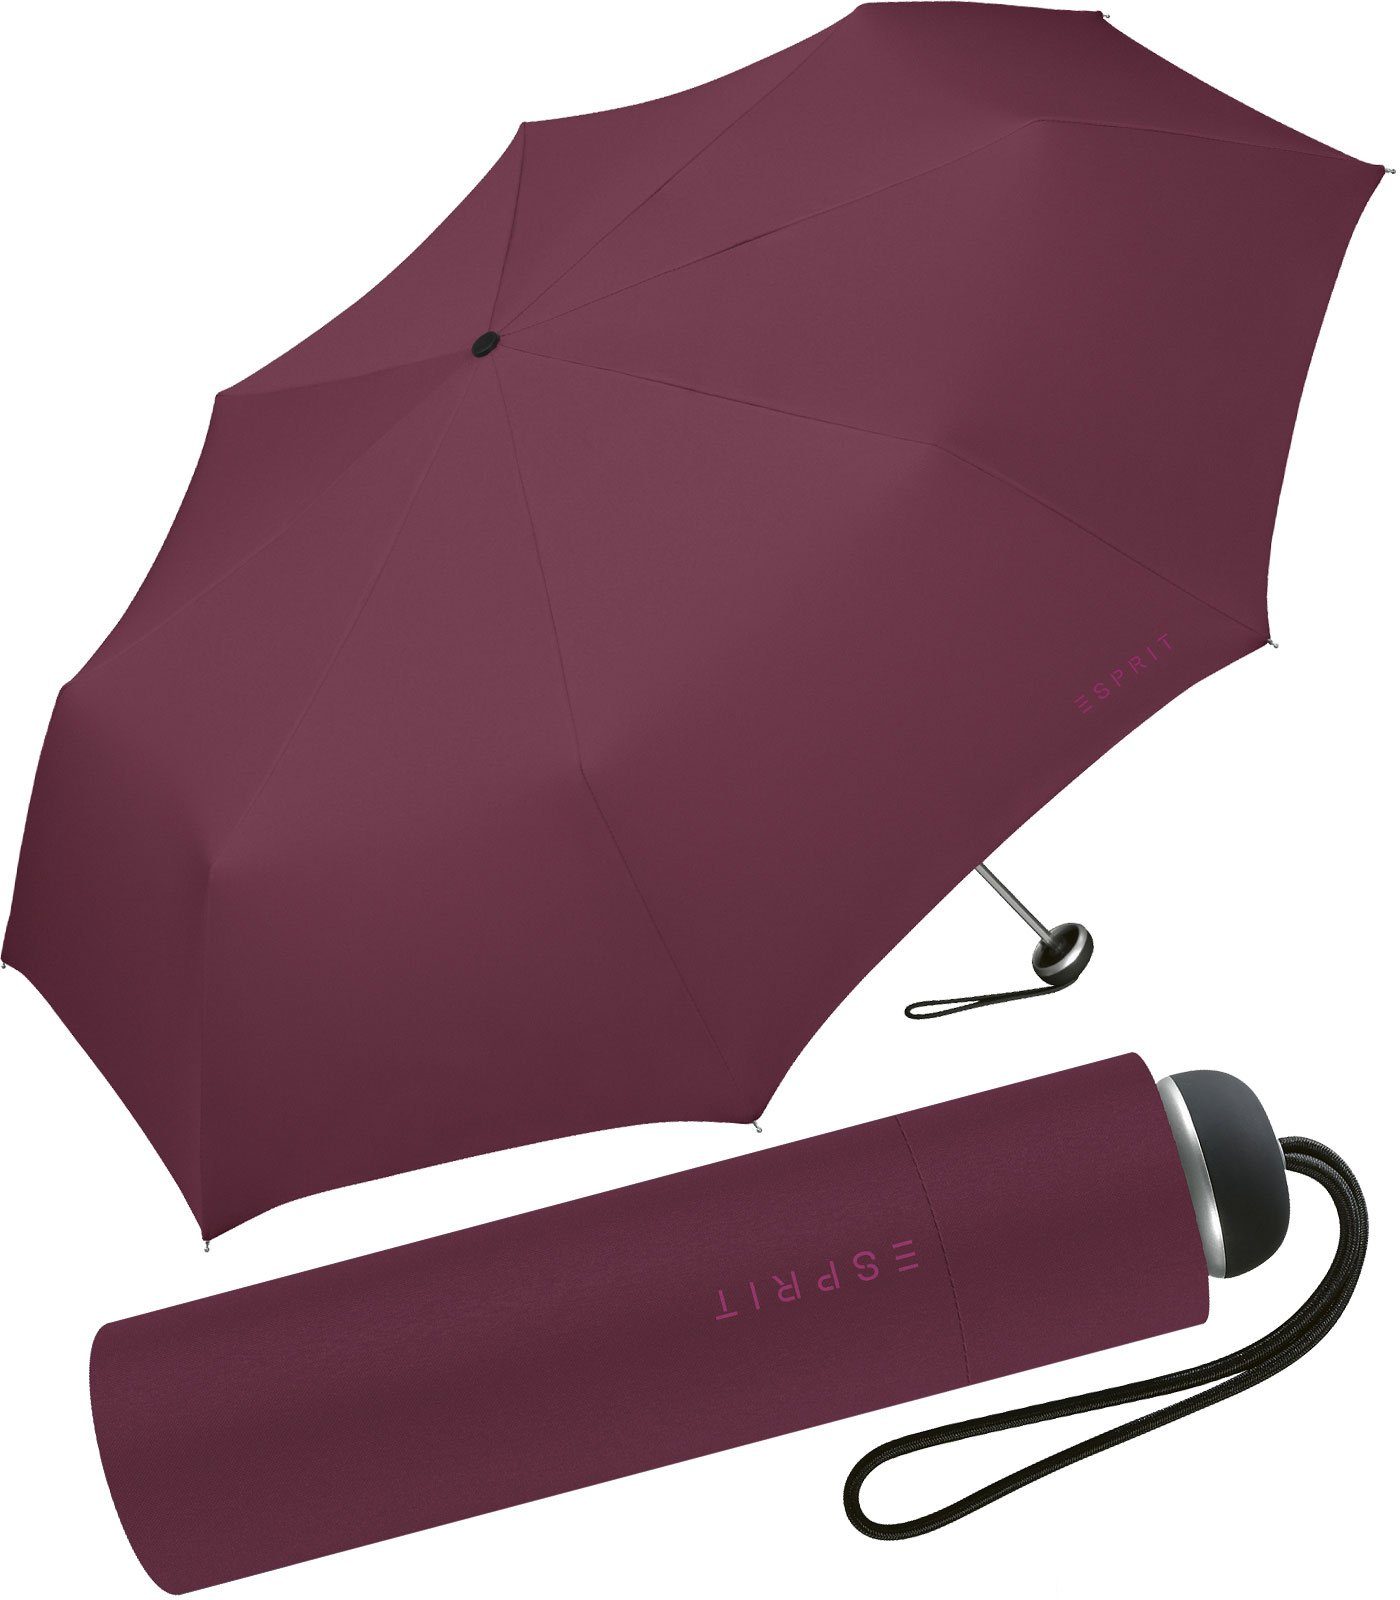 Esprit Taschenregenschirm leichter, handlicher Schirm für Damen, Begleiter in modischen Farben - maroon banner bordeaux | Taschenschirme